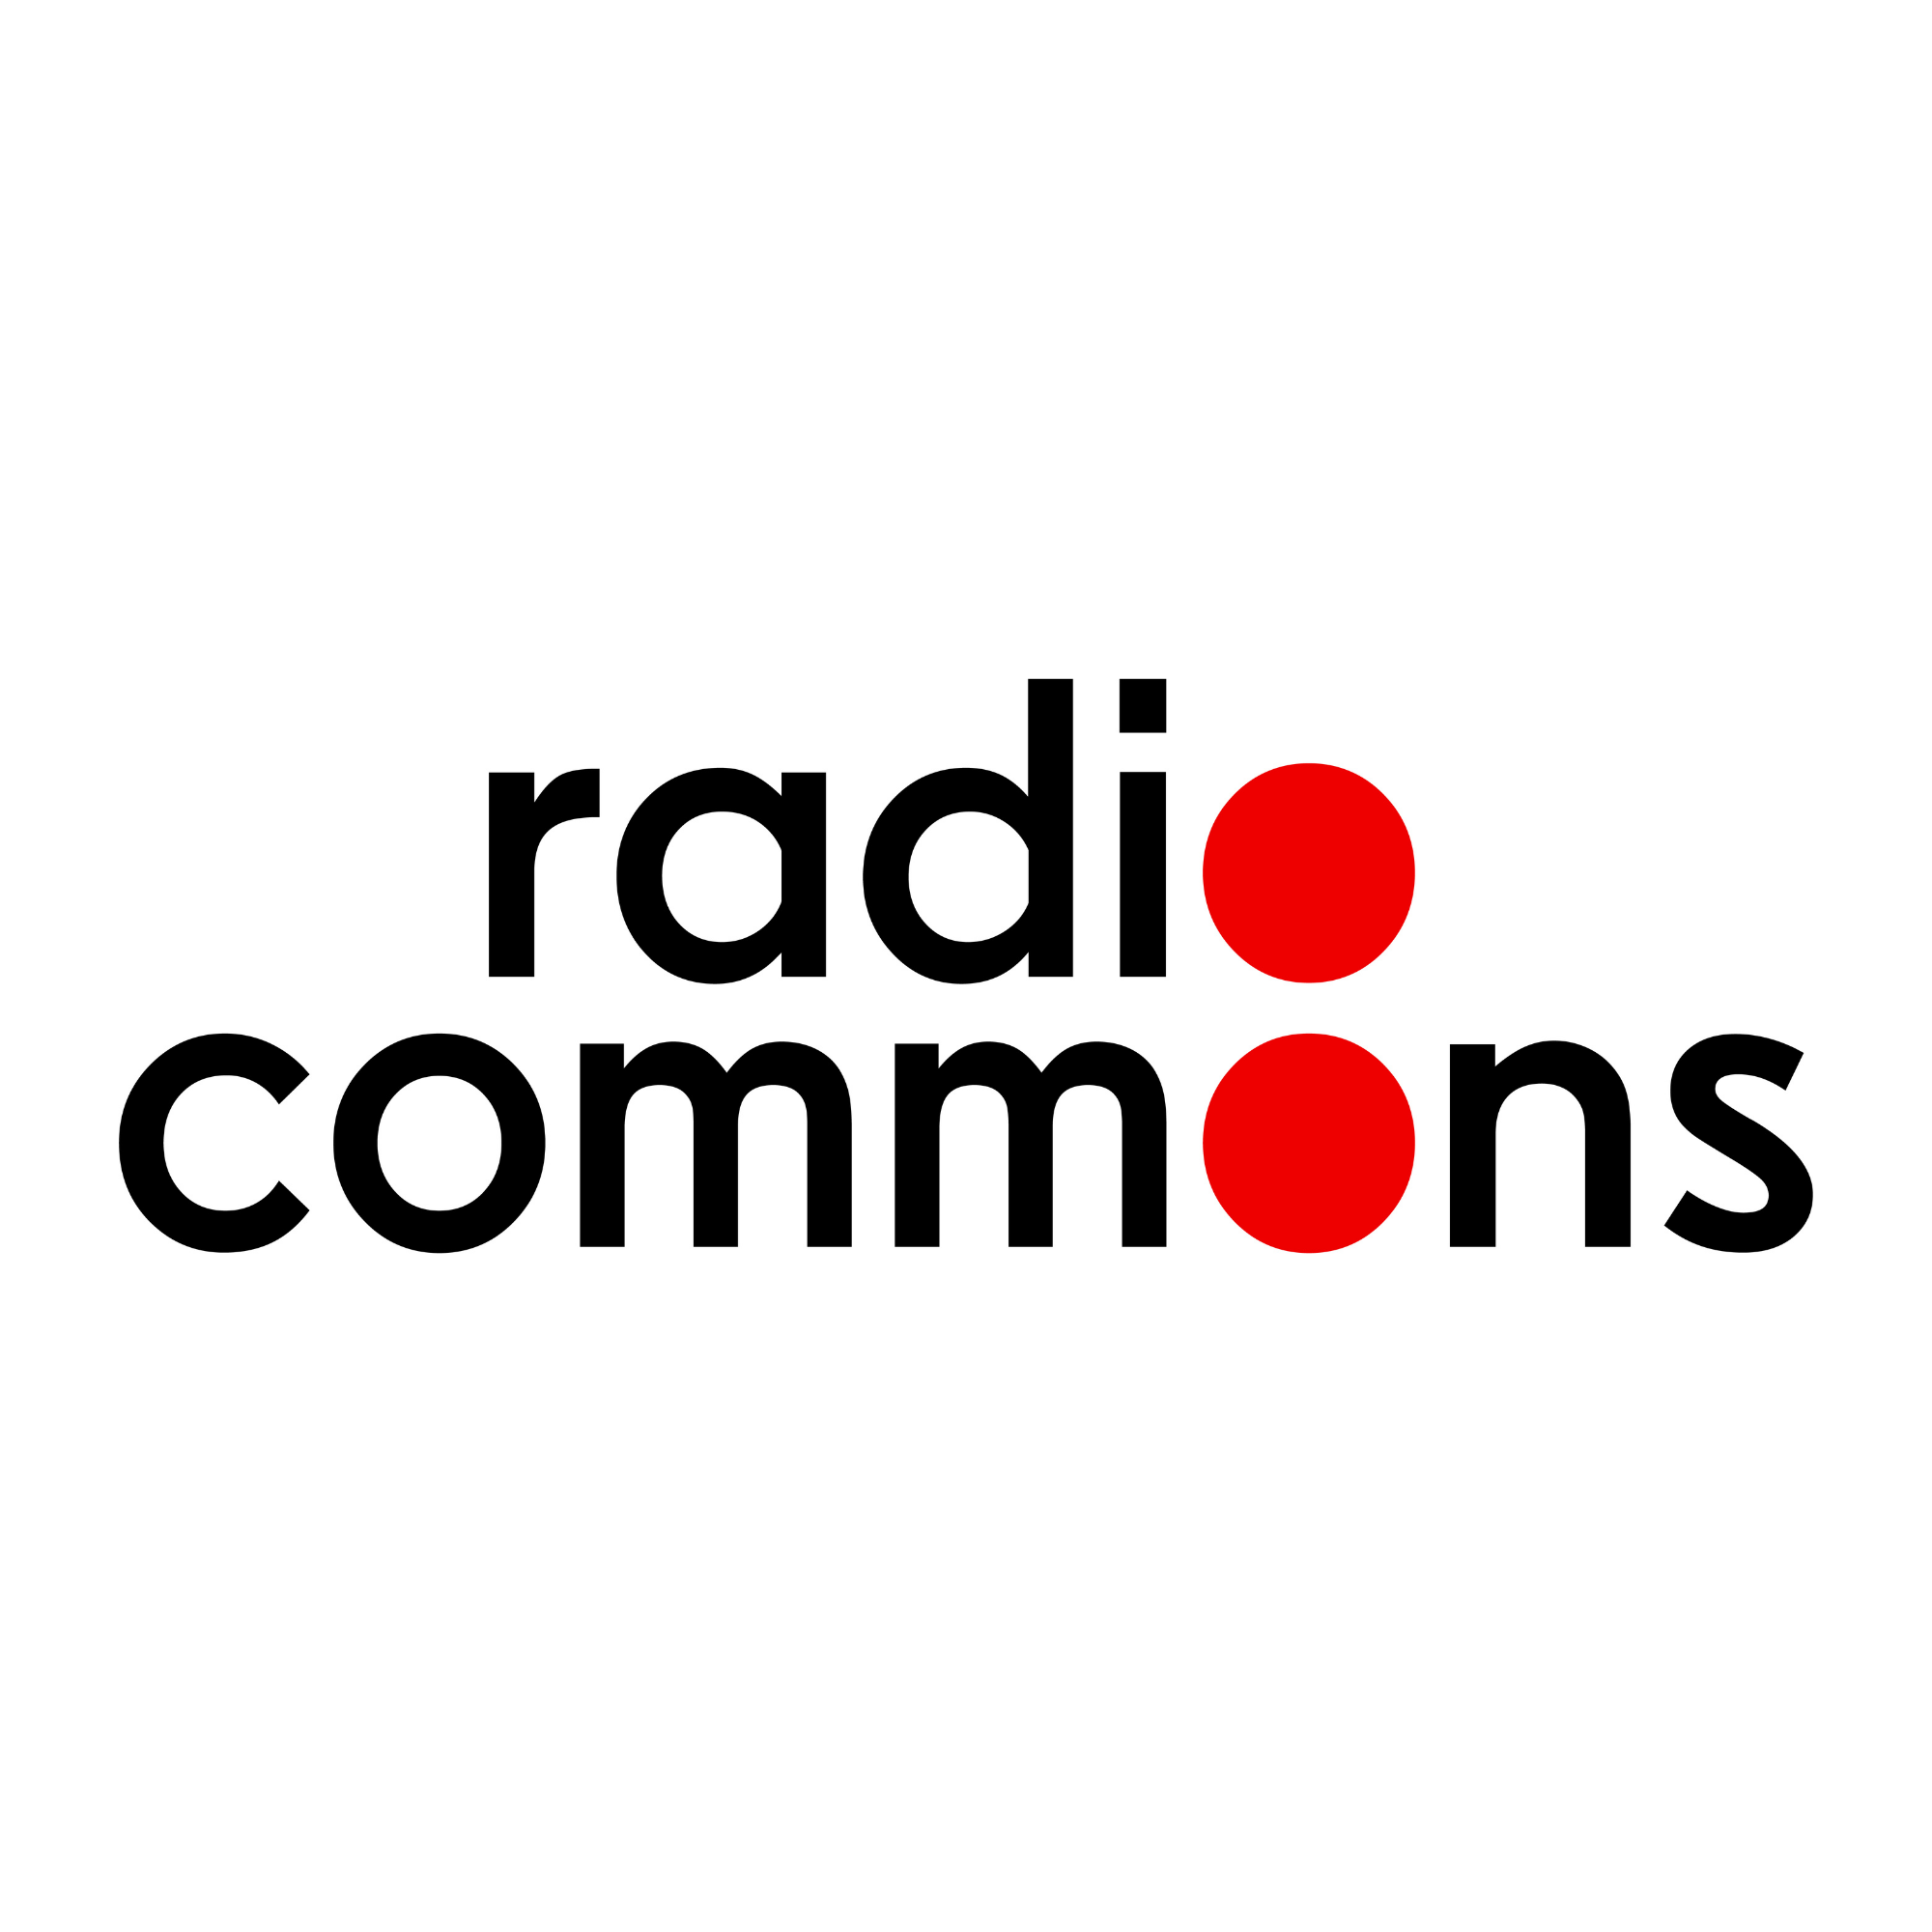 Radio Commons